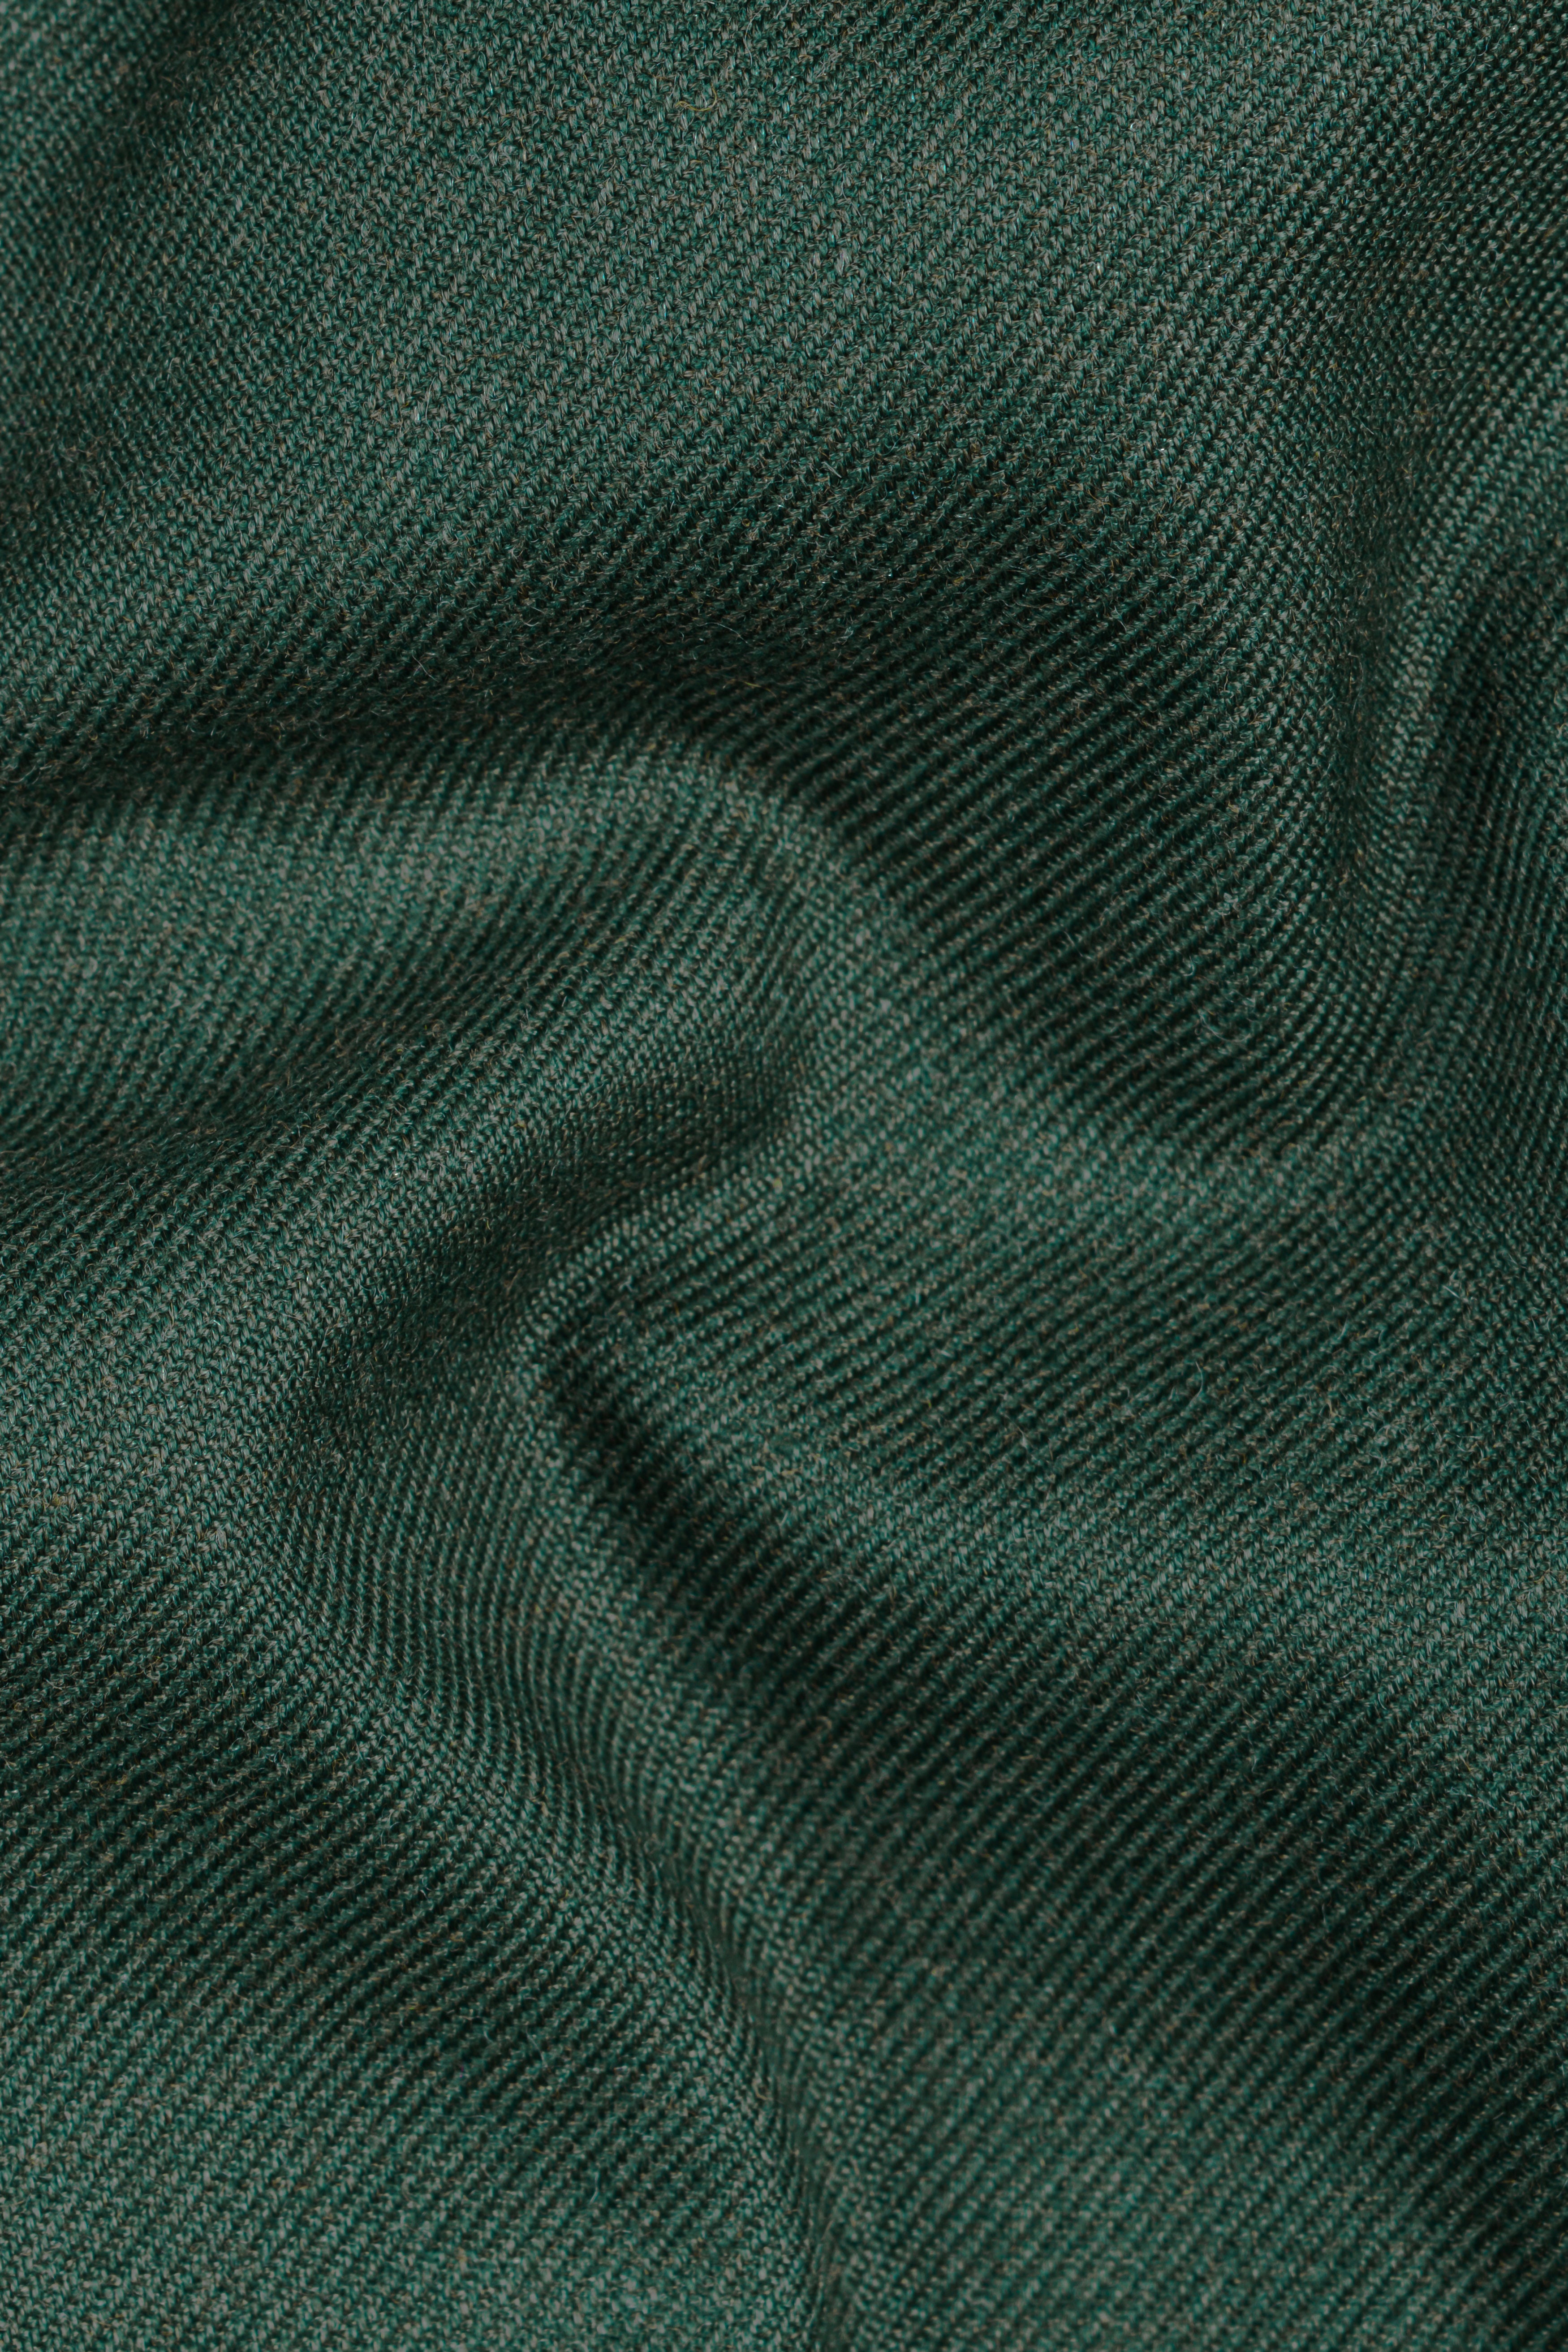 Plantation Green Tweed Bandhgala Suit